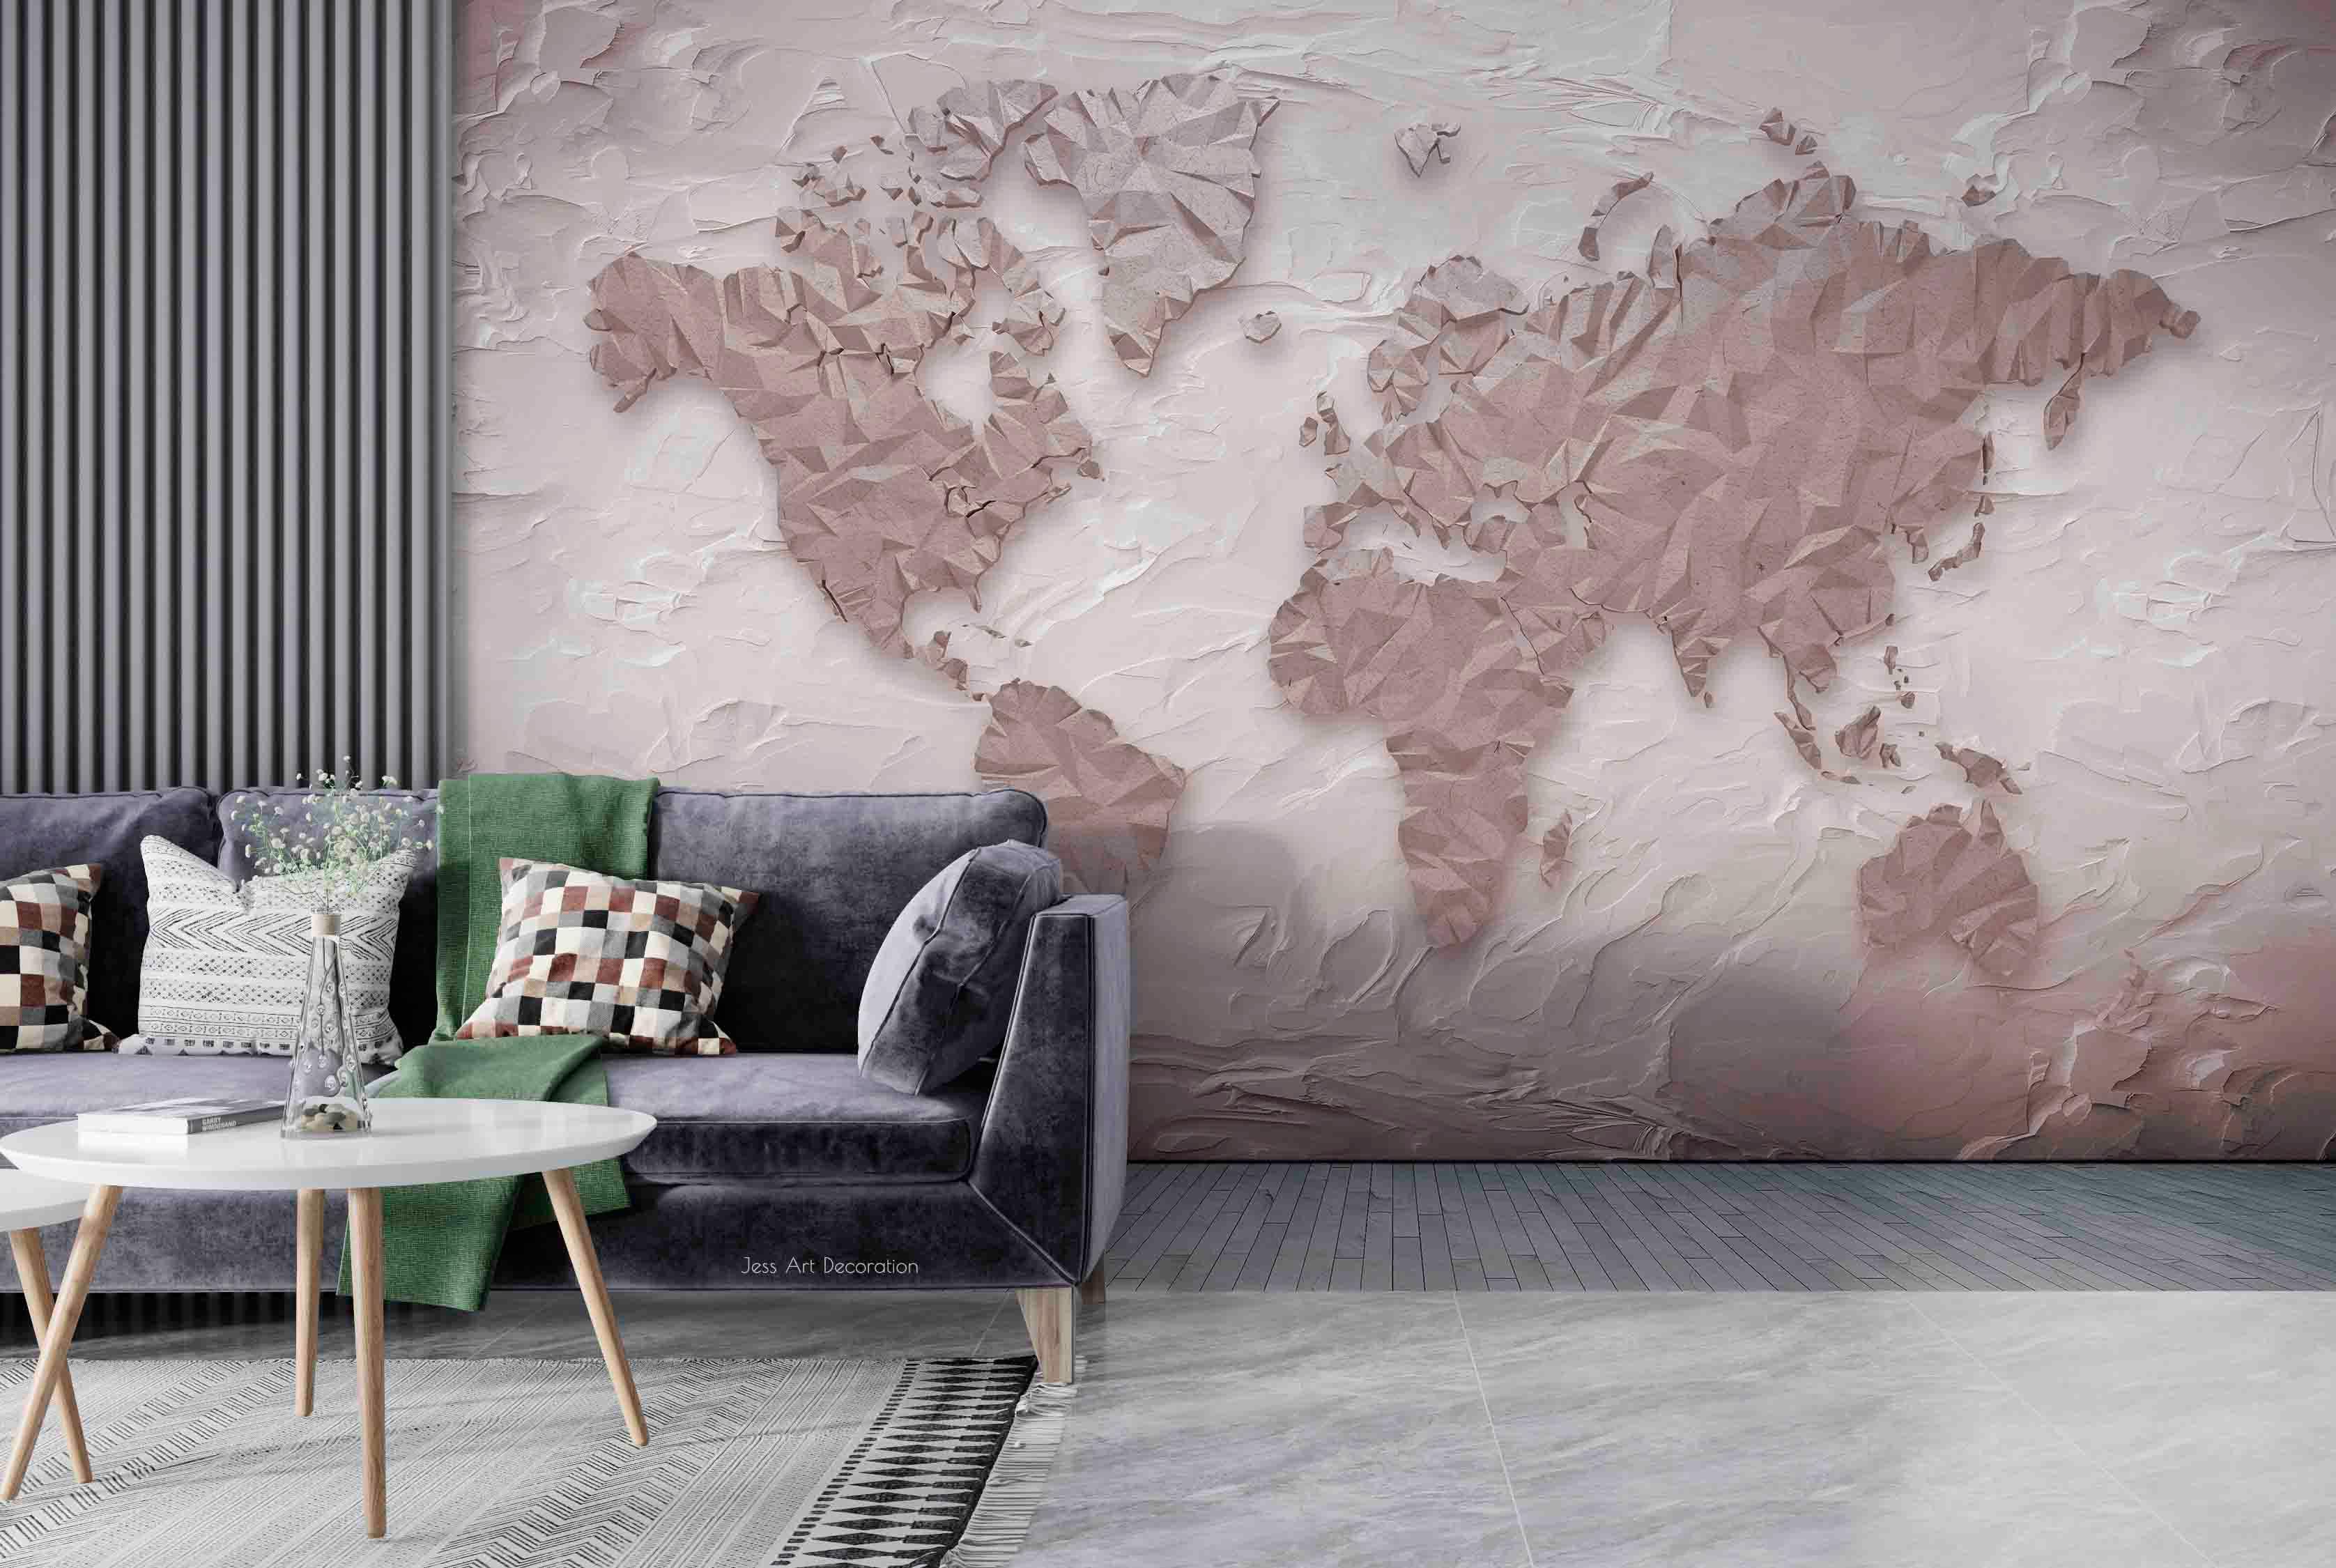 3D Relief World Map Wall Mural Wallpaper GD 3039- Jess Art Decoration